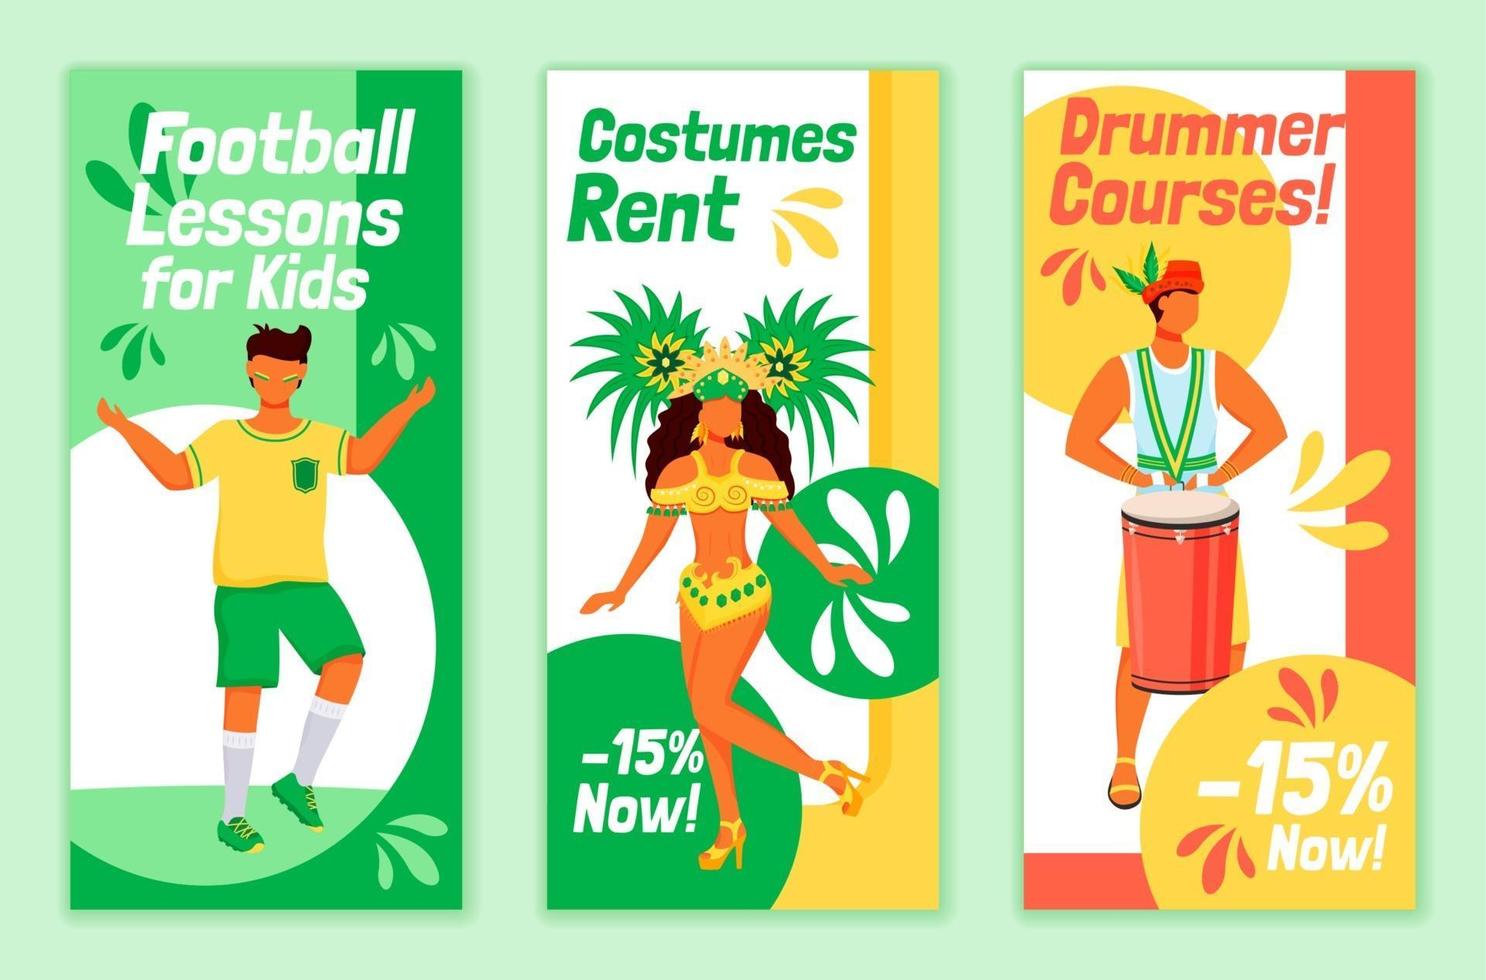 brasilianska karneval flygblad platt vektor mallar set. fotbollslektioner för barn utskrivbar broschyrdesignlayout. kostymer hyra. trummis kurser reklam vertikala banner, berättelser om sociala medier